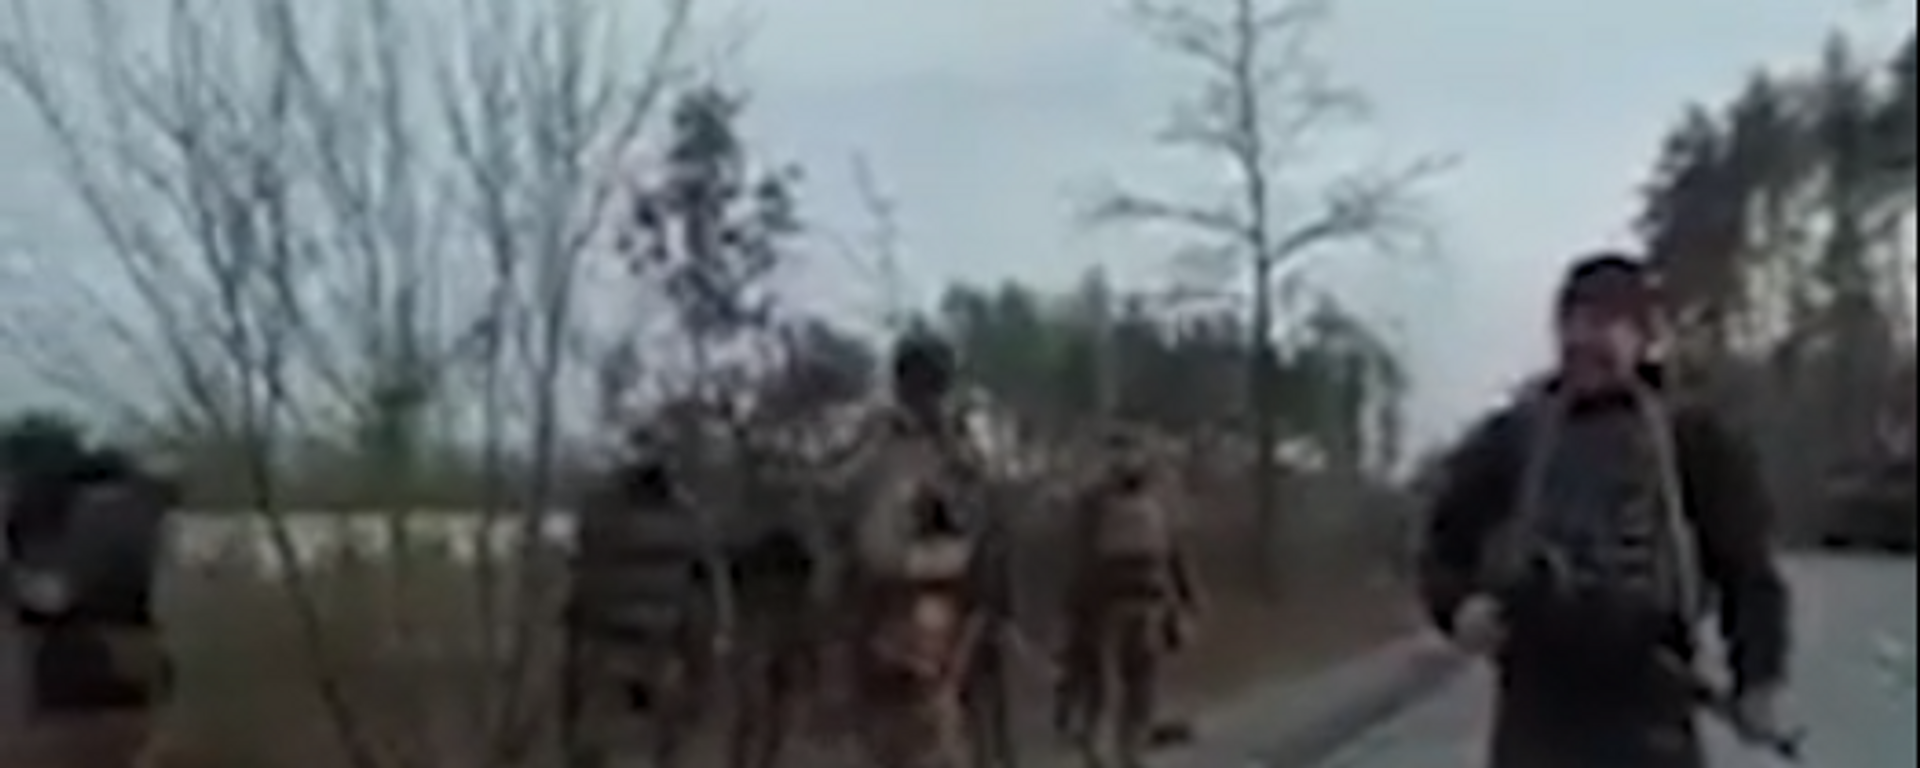 Video: combatientes ucranianos masacran a prisioneros de guerra rusos  - Sputnik Mundo, 1920, 05.04.2022